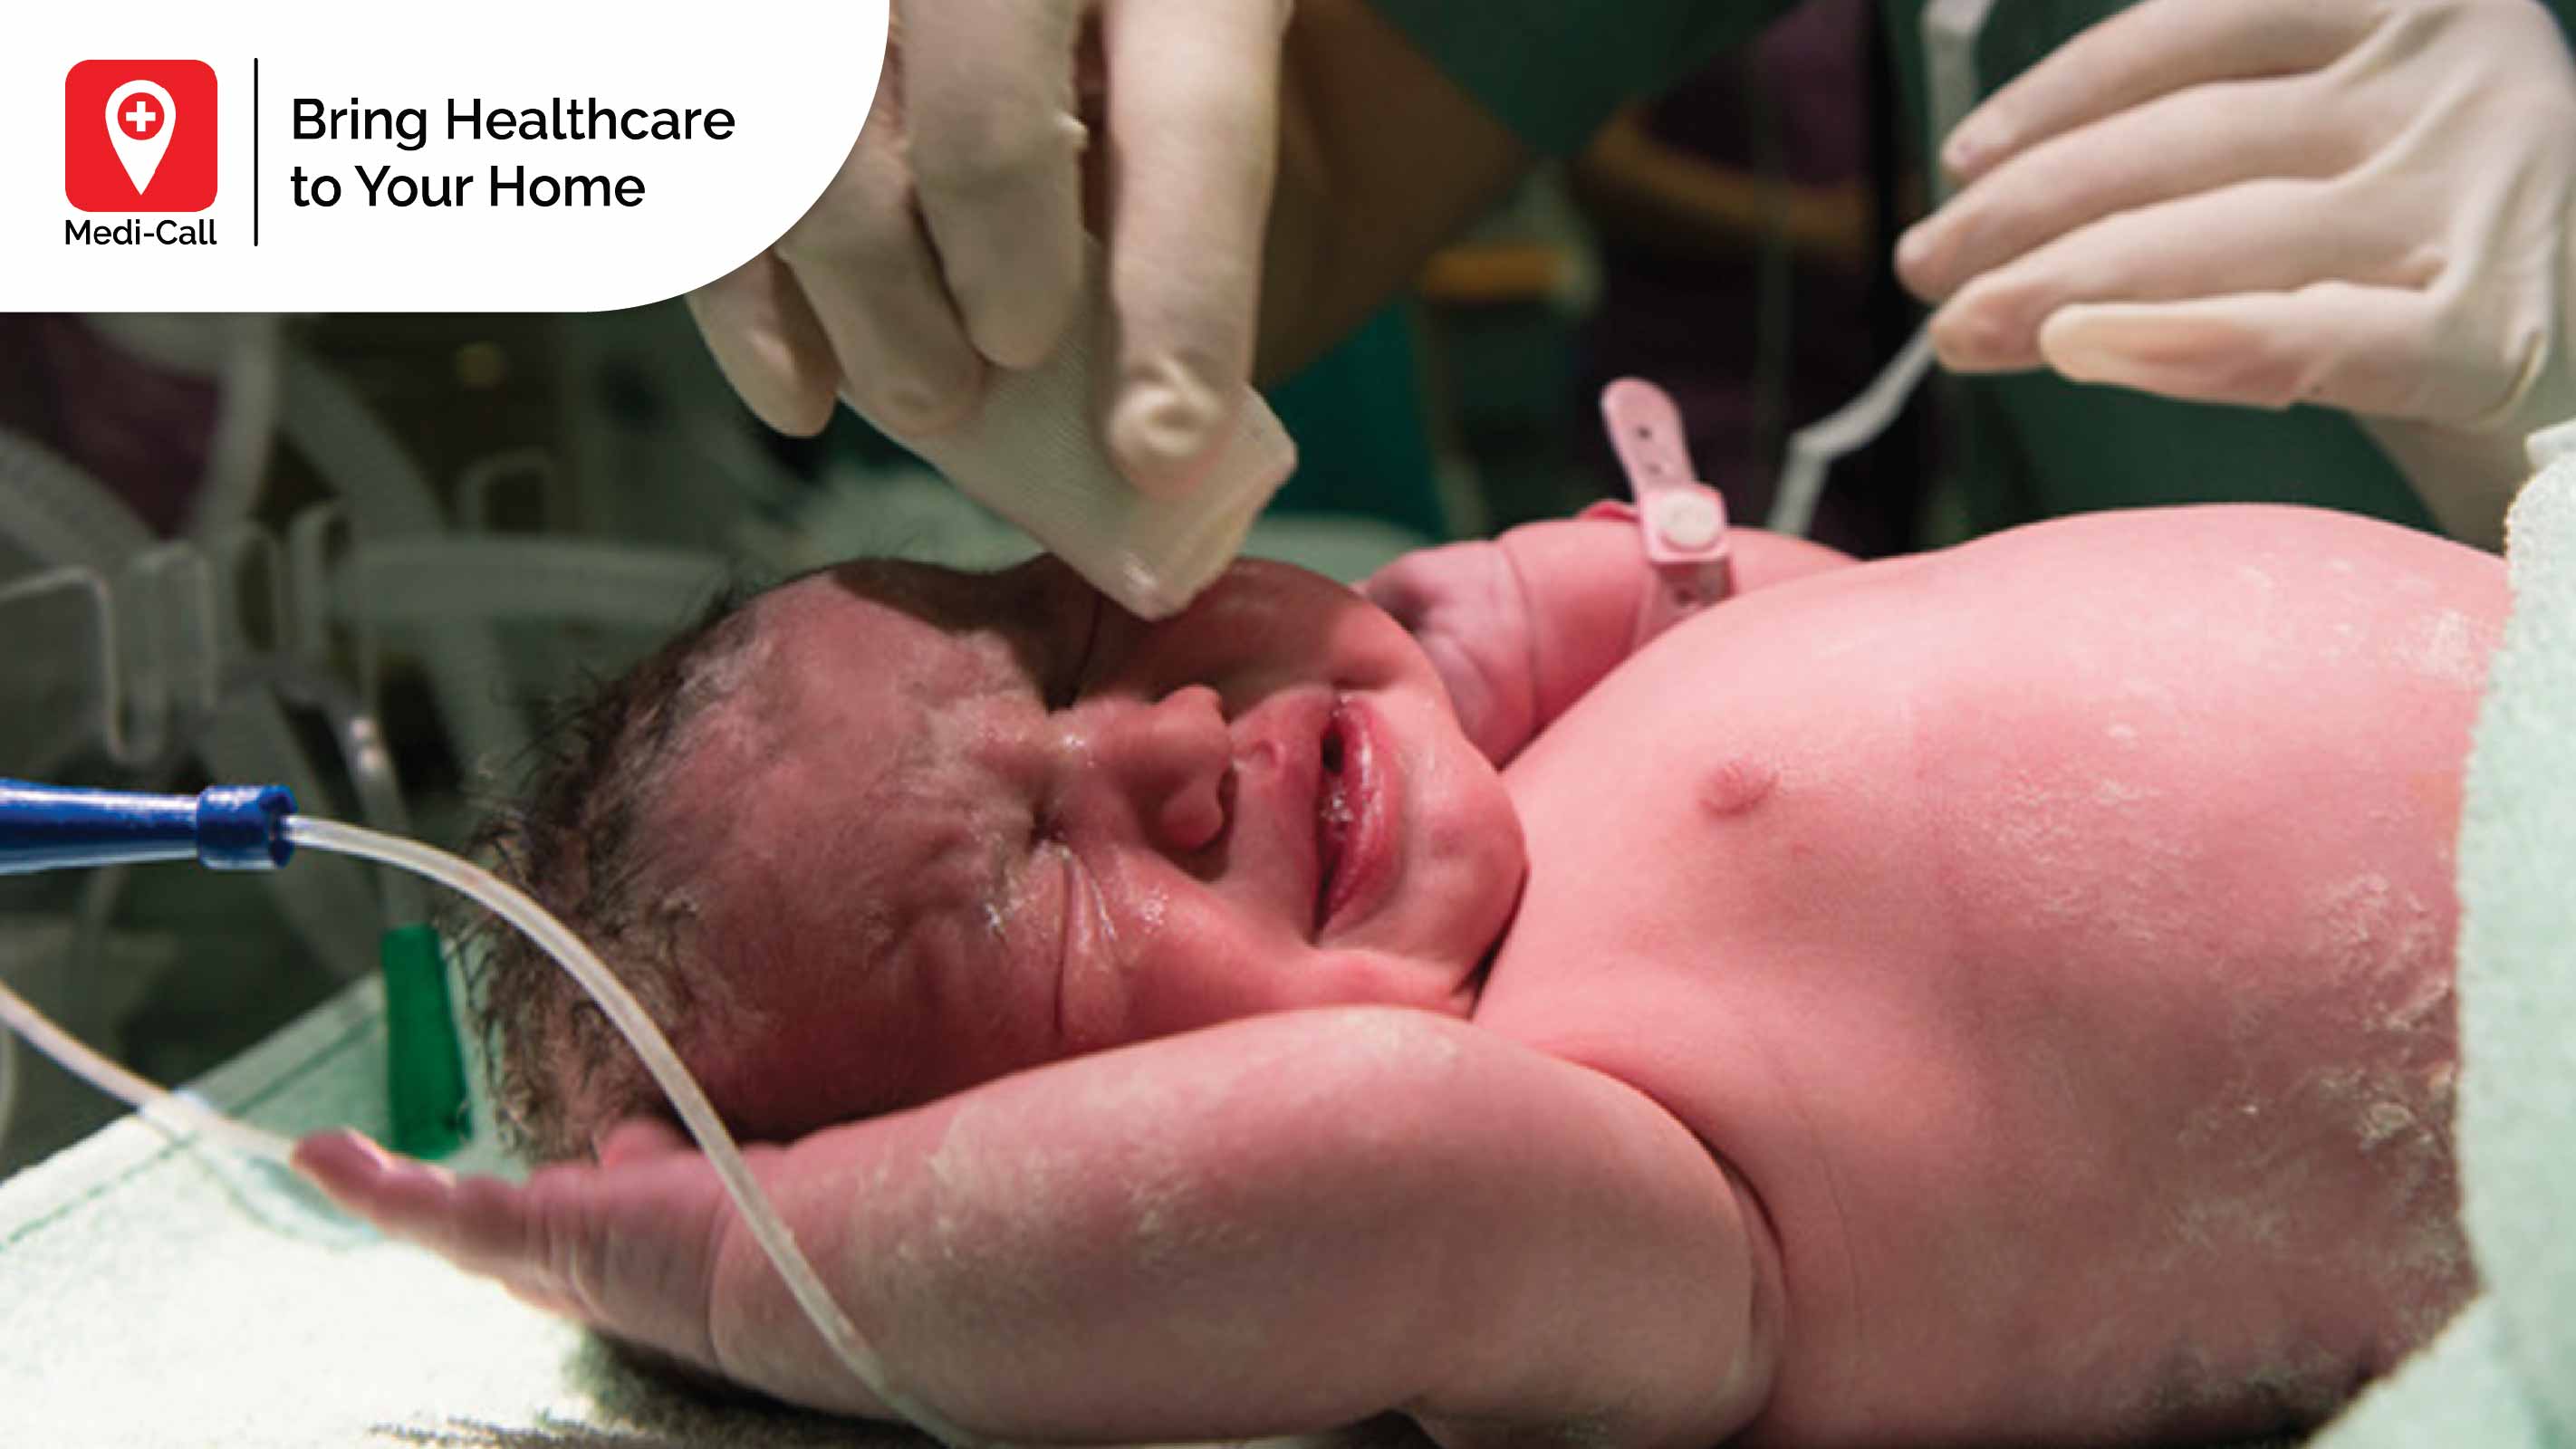 cara merawat bayi baru lahir, merawat bayi baru lahir, merawat bayi, perawat bayi, perawat bayi baru lahir, medi-call, medicall